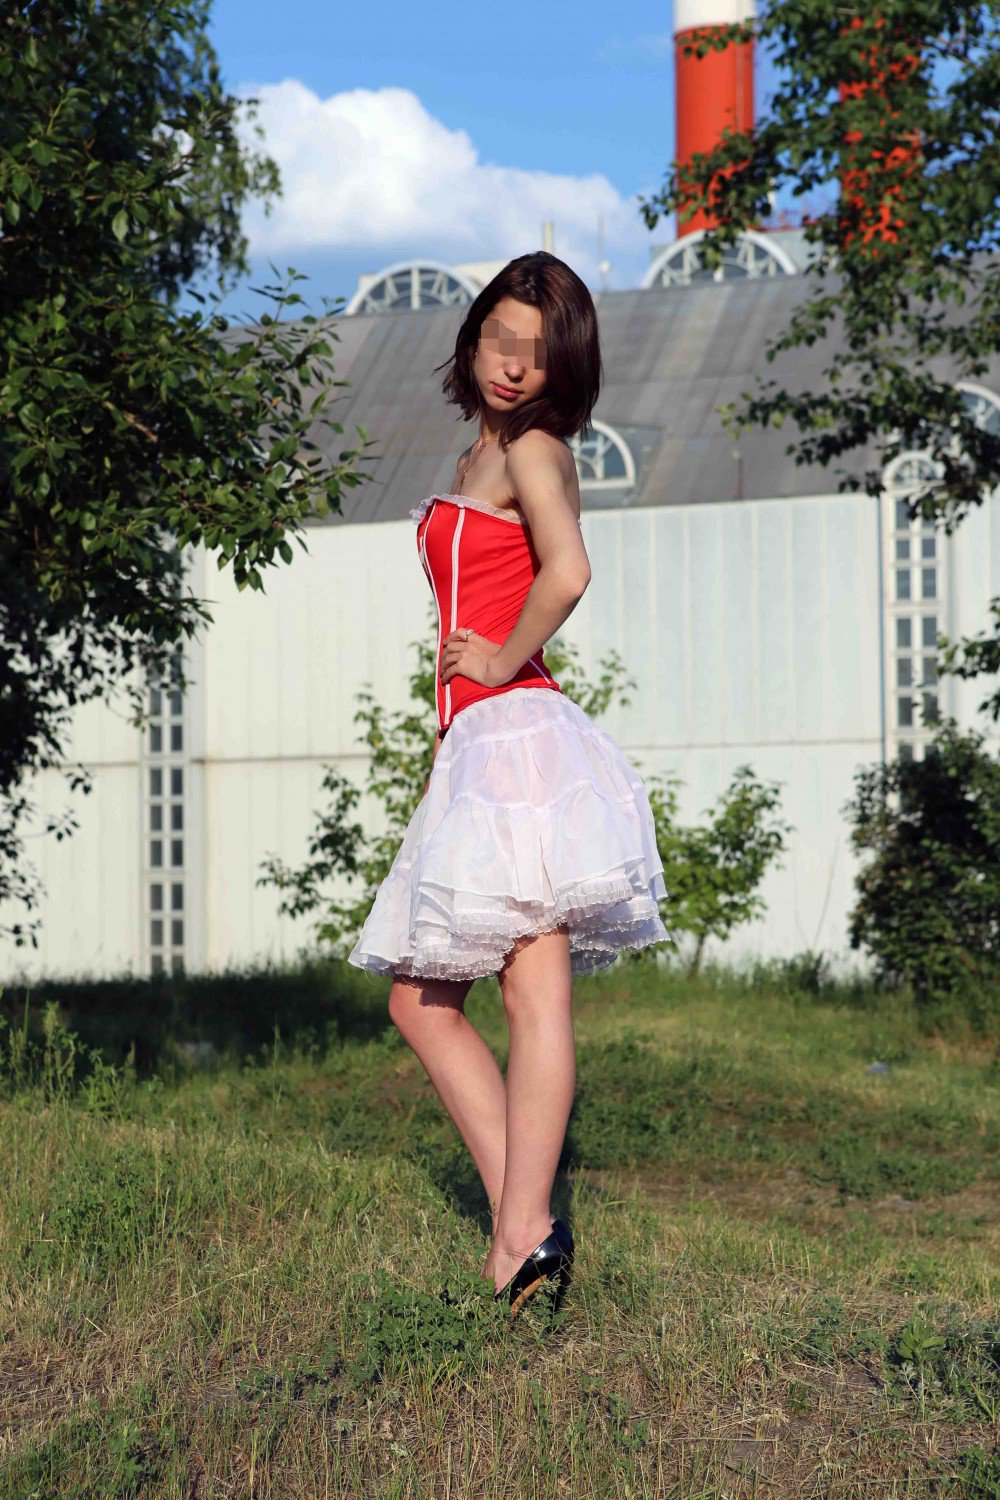 Проститутка Софи возрастом 22 с ростом 165 см для интима в Москве